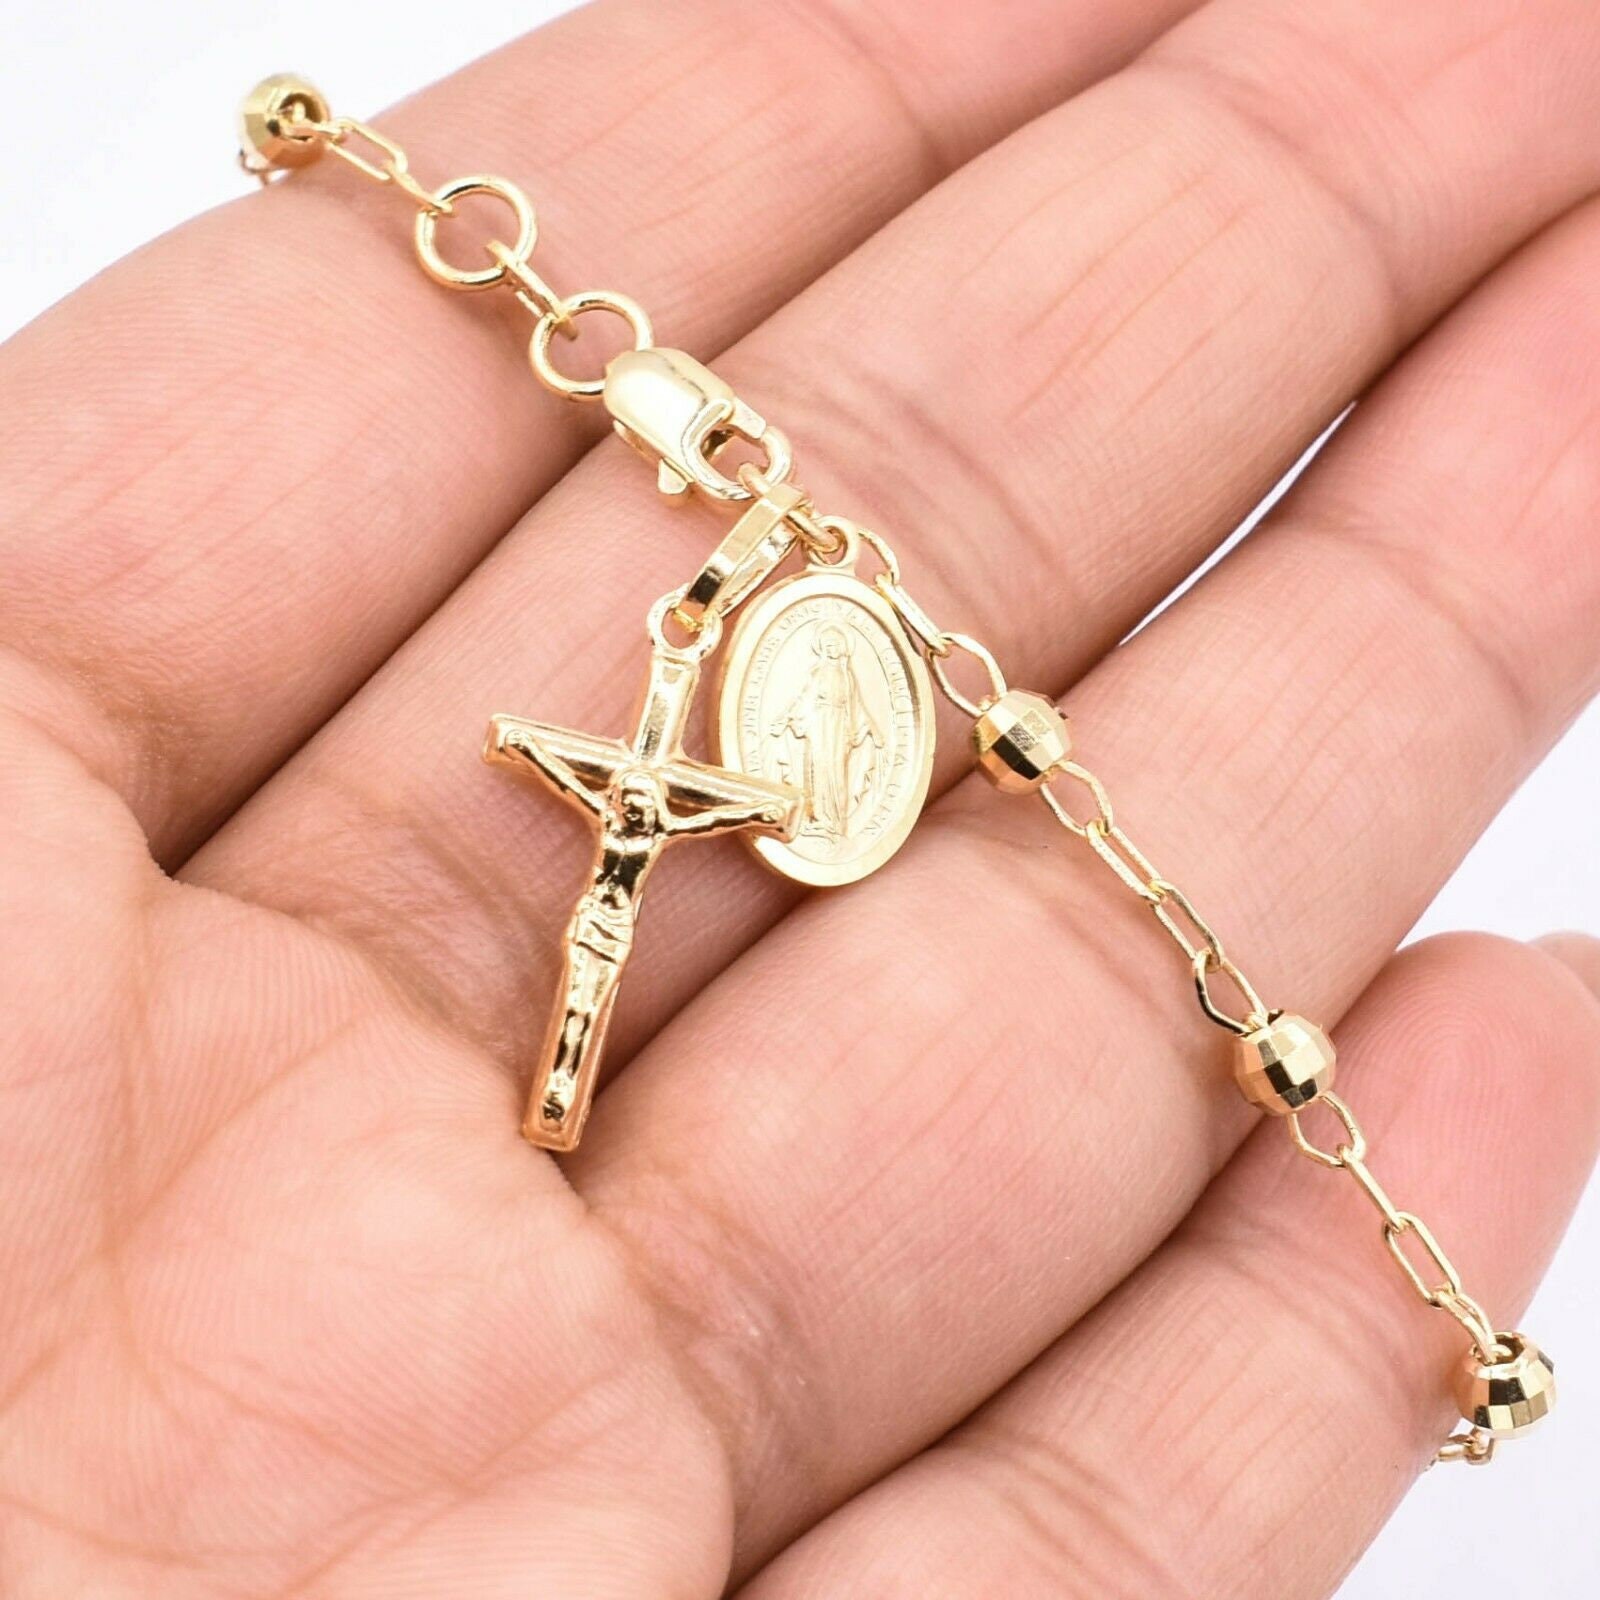 Buy Tricolor Gold Rosary Bracelet, 14k Gold Crucifix Rosary Bead Bracelet,  Christ Dangle Bracelet Online in India - Etsy